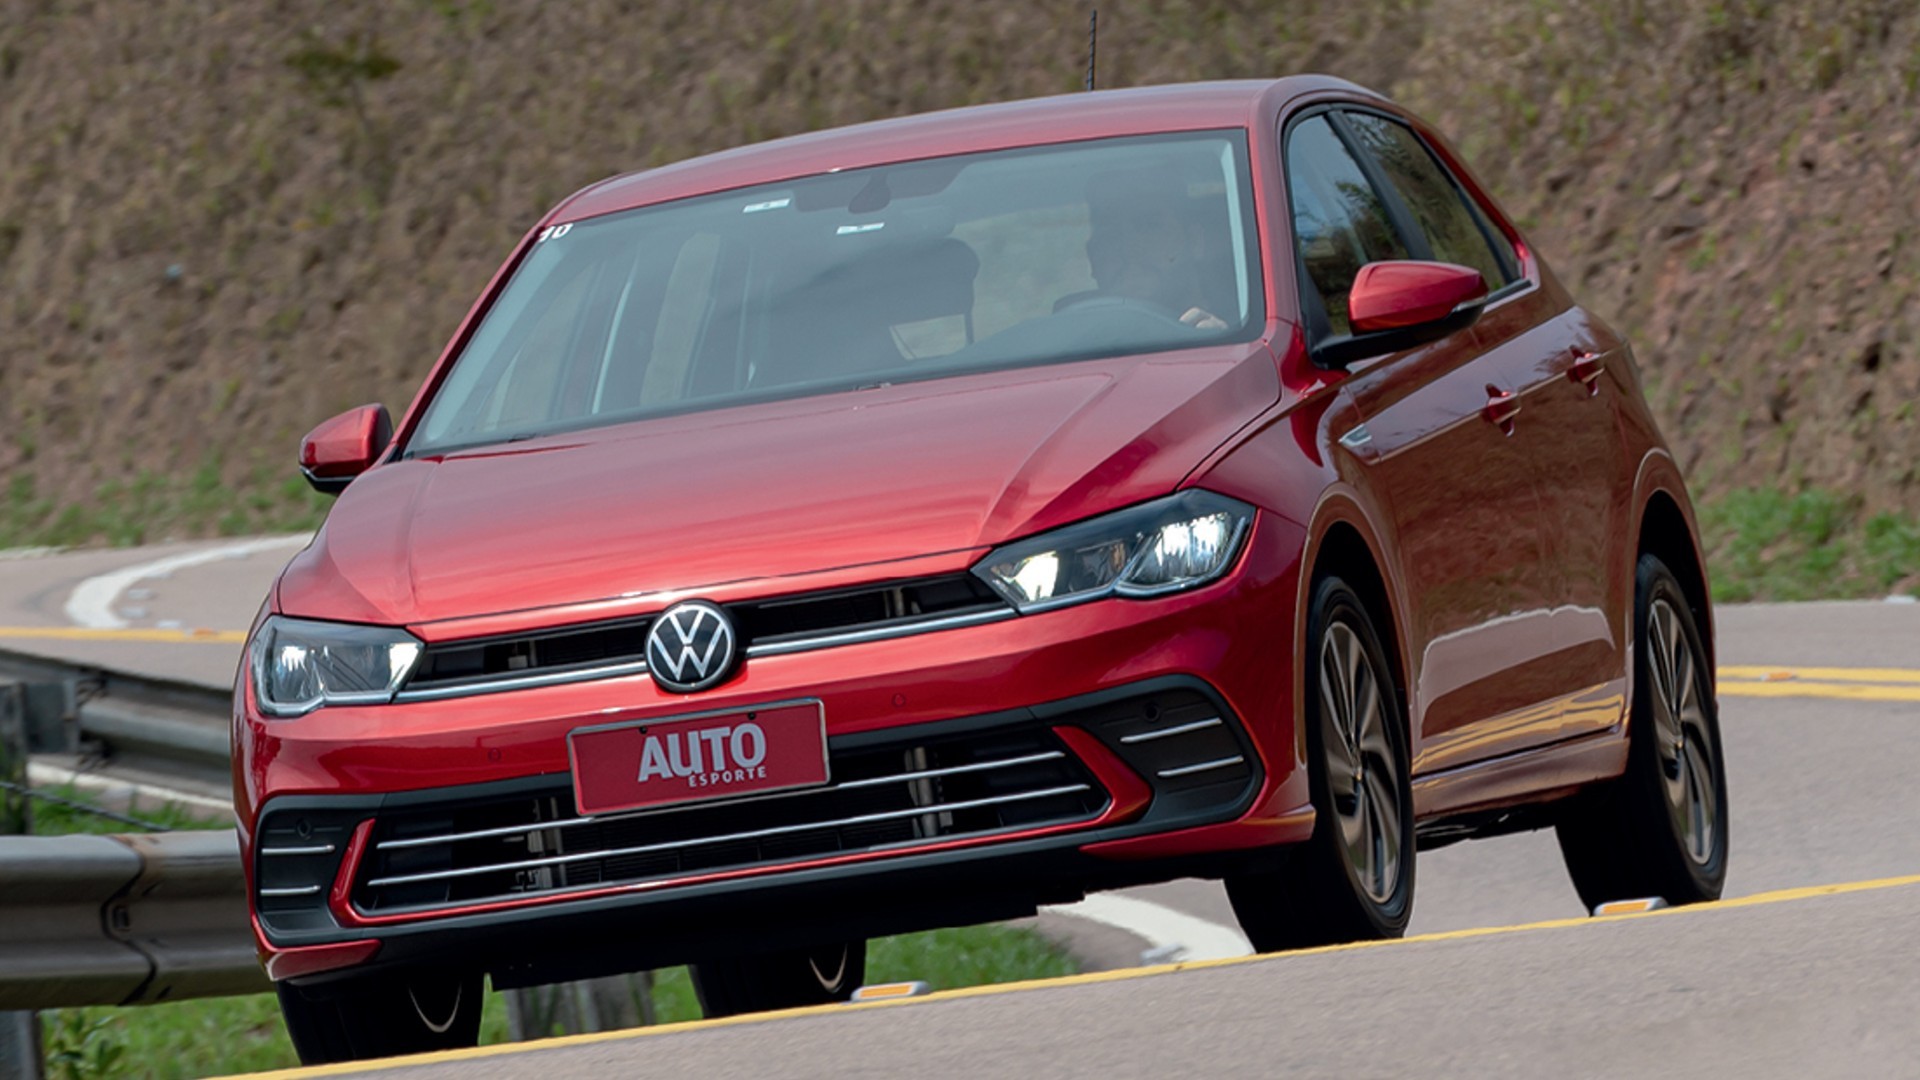 VW Polo usado: veja preços na Tabela Fipe e pontos fortes da 6ª geração